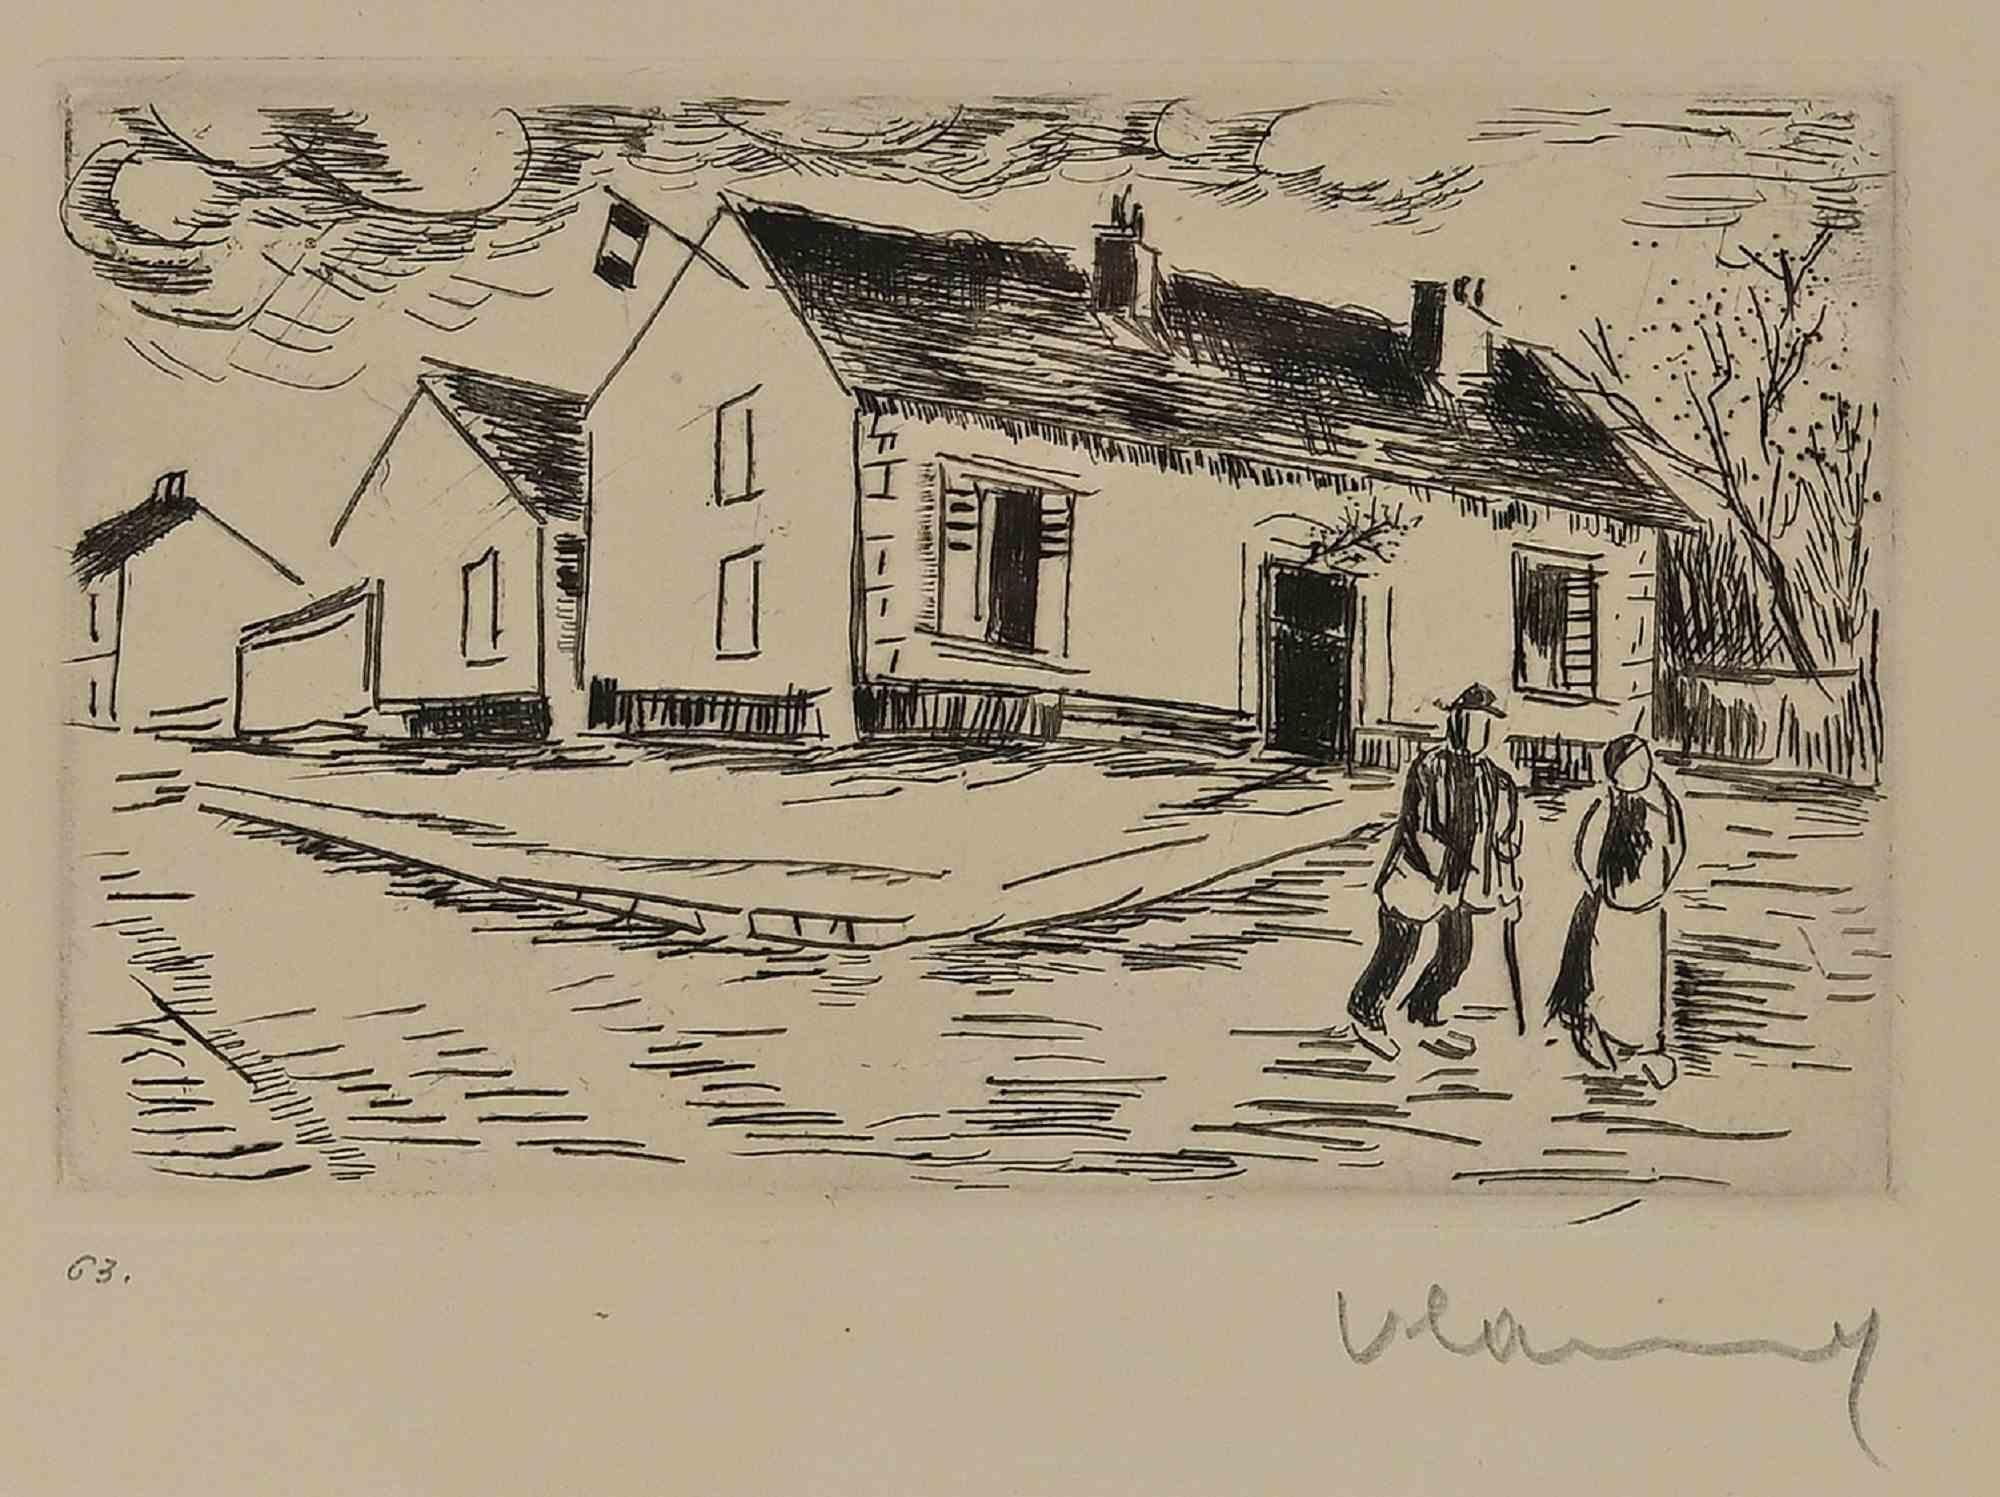 Maurice de Vlaminck Landscape Print - Village - Etching by M. de Vlaminck - 1950